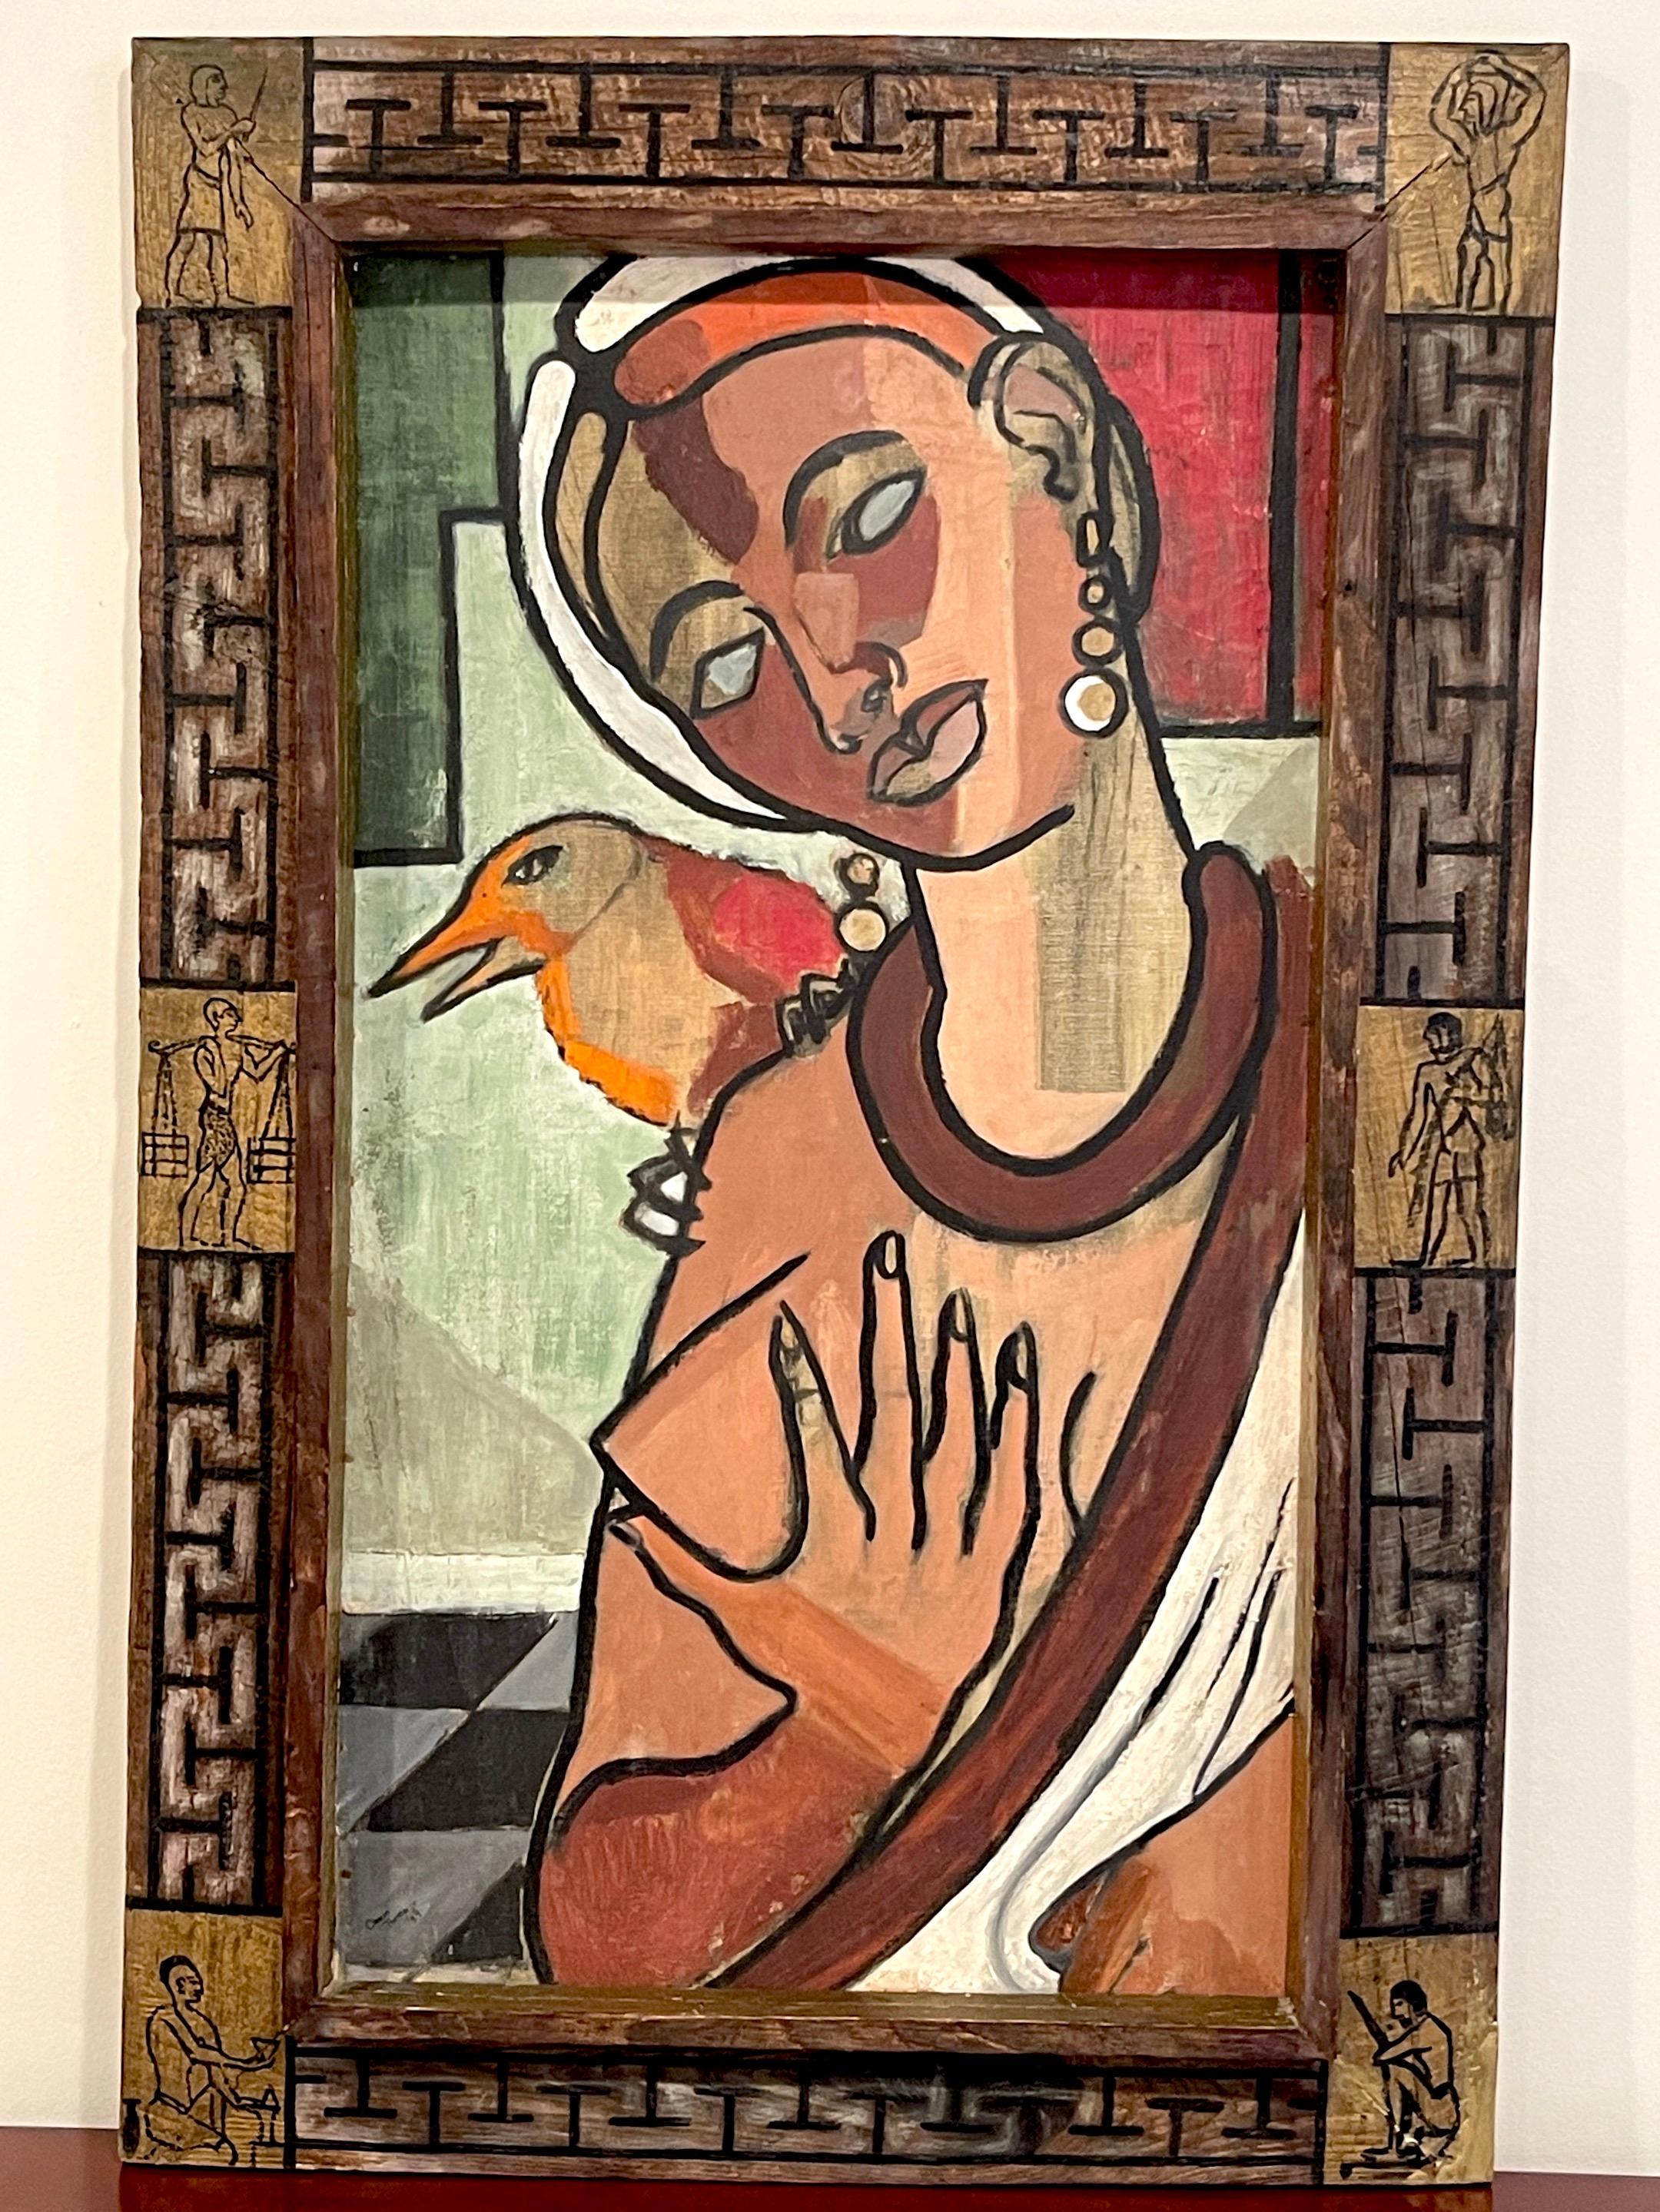 Kubistisches Porträt von Kleopatra und Falke, von Clevan Thomas Jr. 1944
Ein Meisterwerk der modernen amerikanischen Außenseiterkunst der 1940er Jahre von dem relativ unbekannten afro-amerikanischen Künstler Clevan Thomas Jr.
Signiert unten links